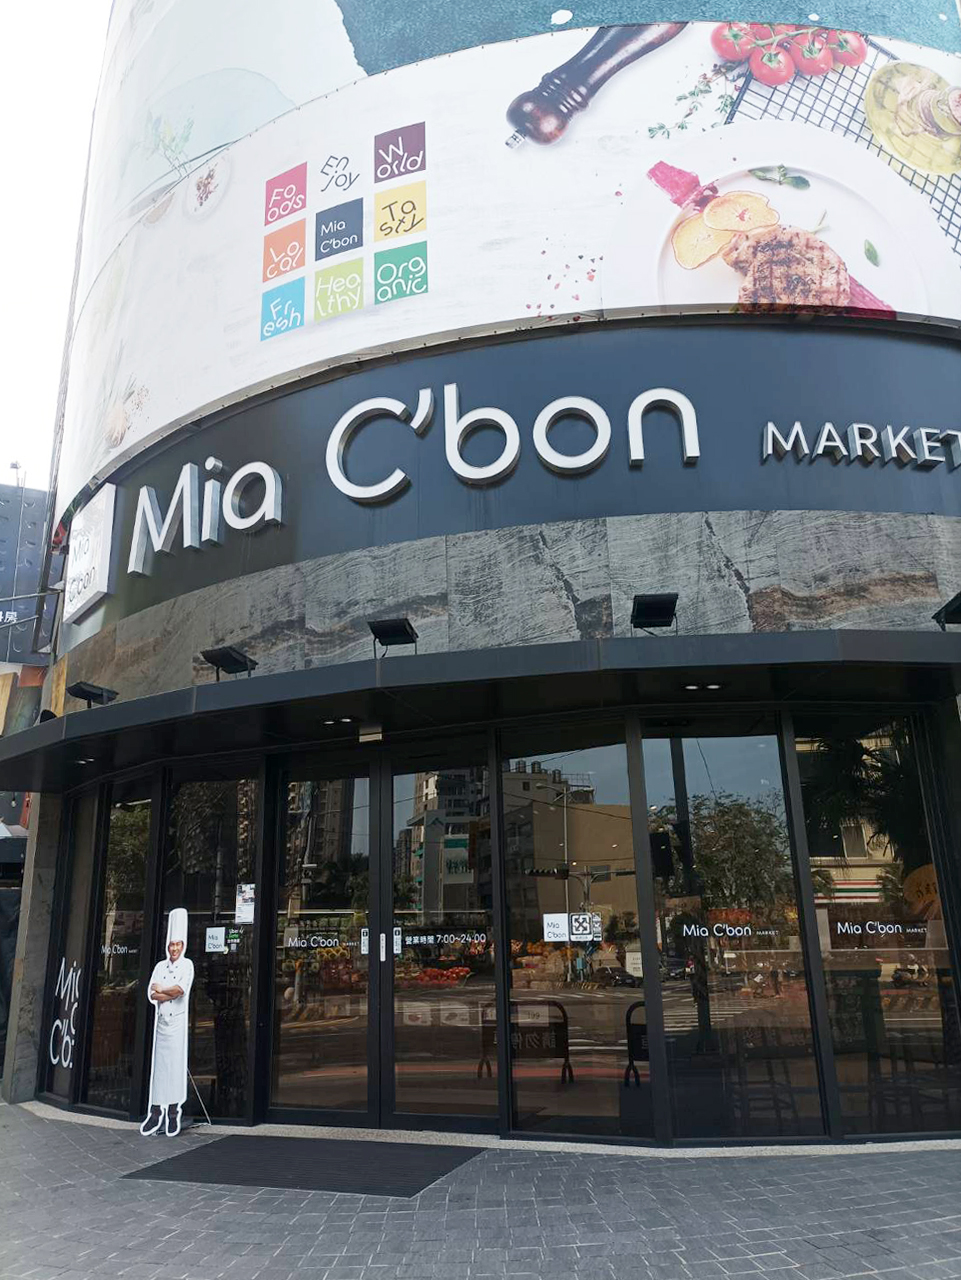 生活機能-Mia C'bon Market2